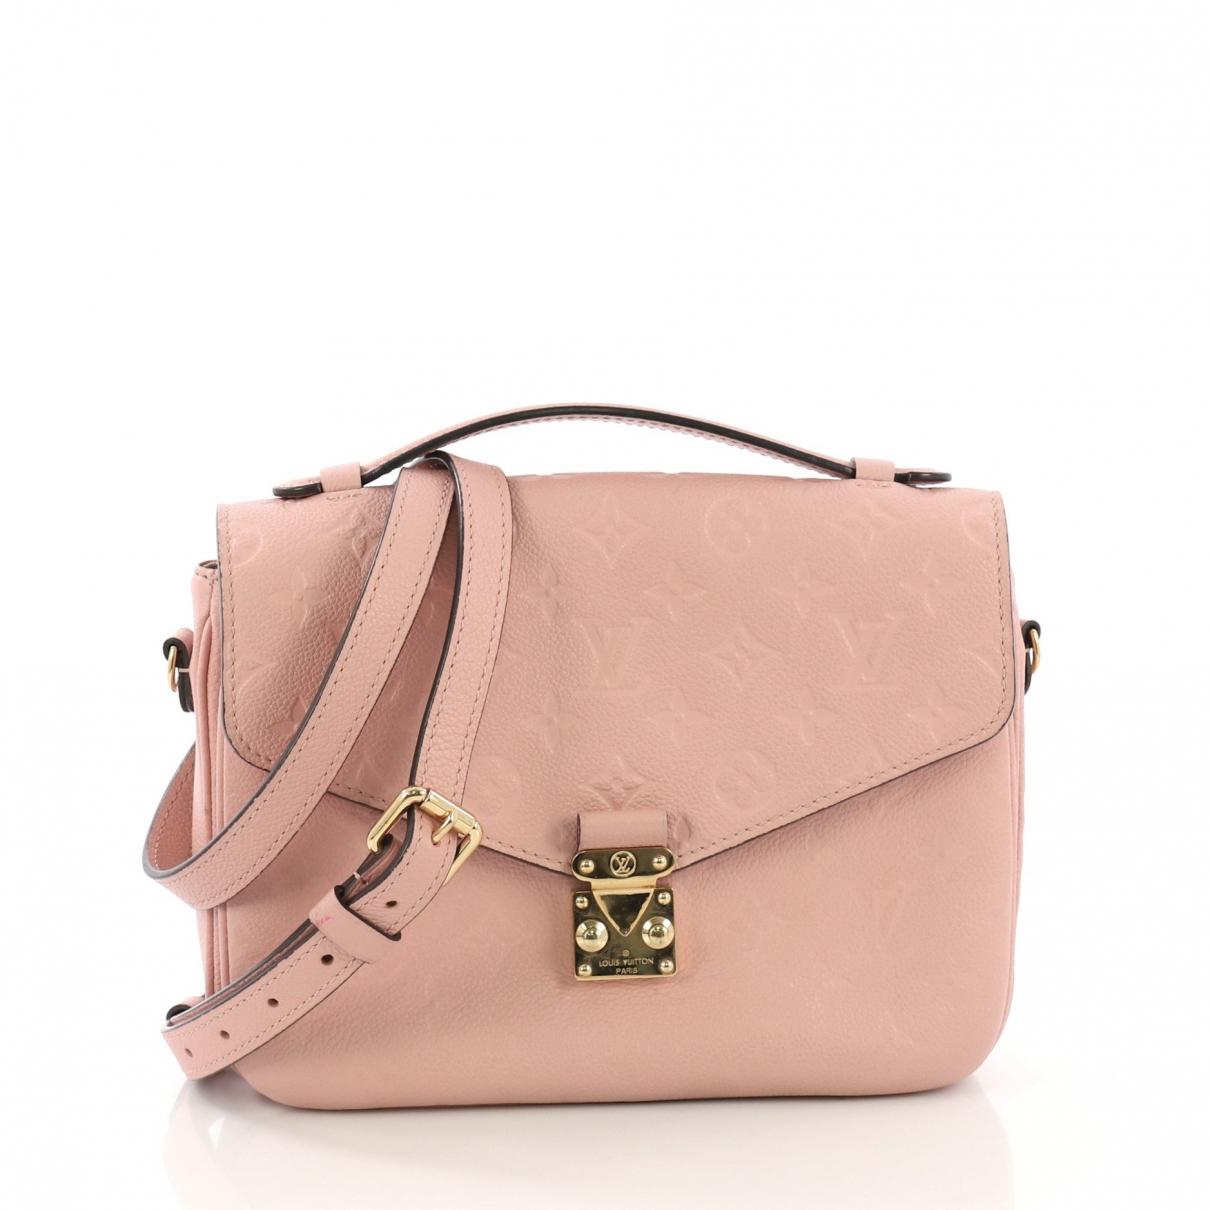 Lyst - Louis Vuitton Metis Pink Leather Handbag in Pink